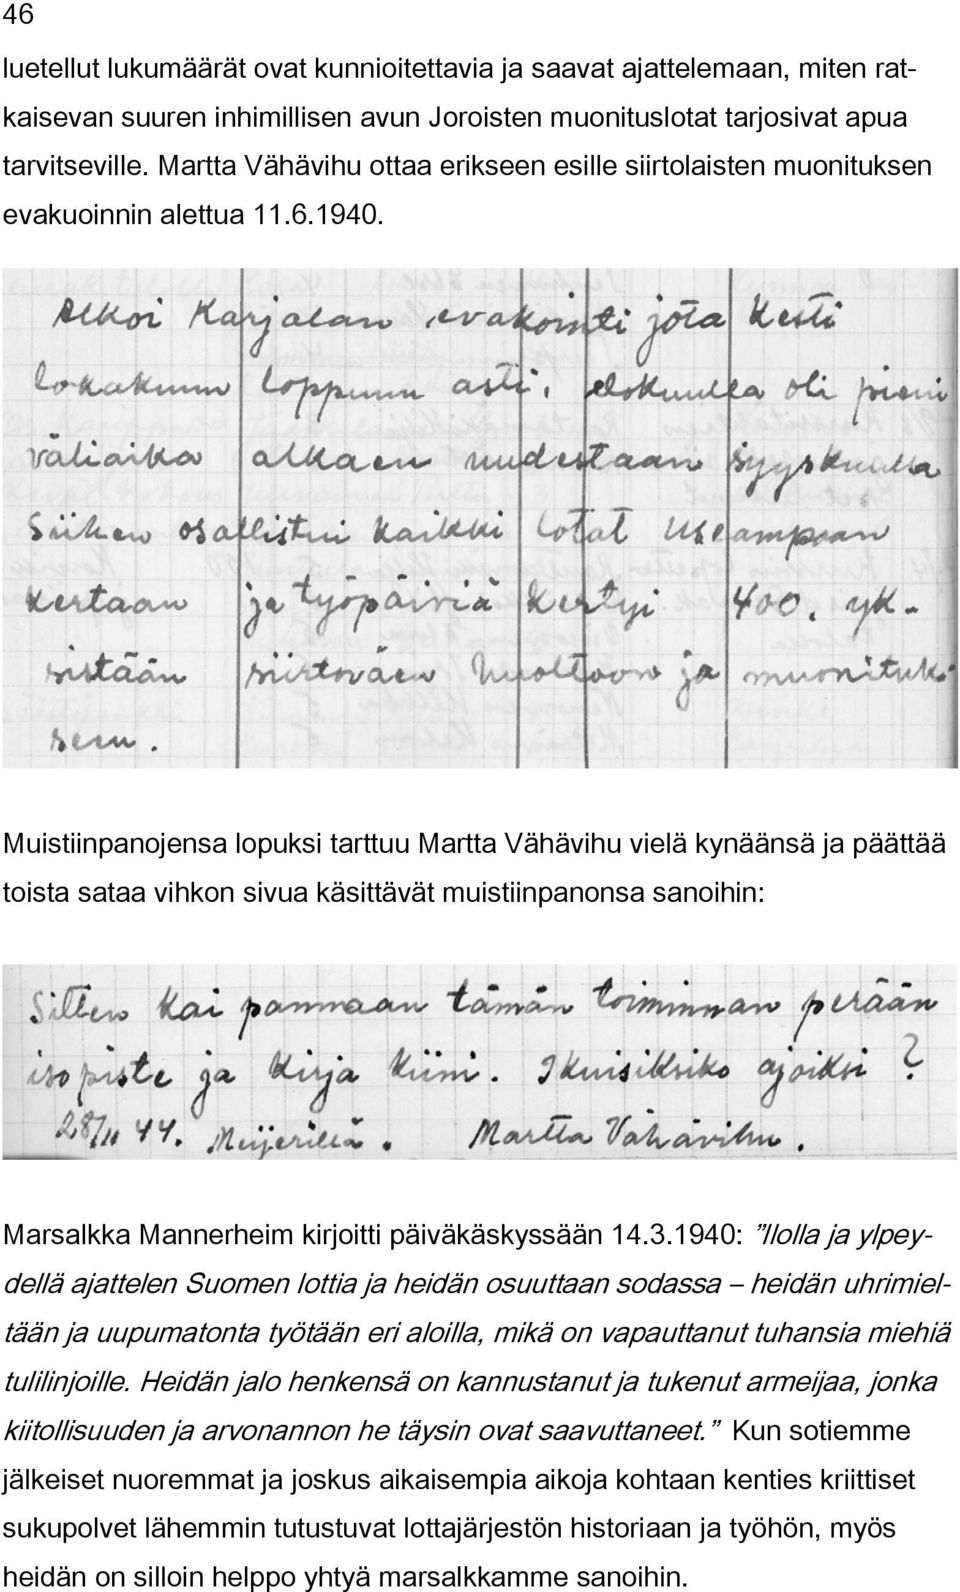 Muistiinpanojensa lopuksi tarttuu Martta Vähävihu vielä kynäänsä ja päättää toista sataa vihkon sivua käsittävät muistiinpanonsa sanoihin: Marsalkka Mannerheim kirjoitti päiväkäskyssään 14.3.